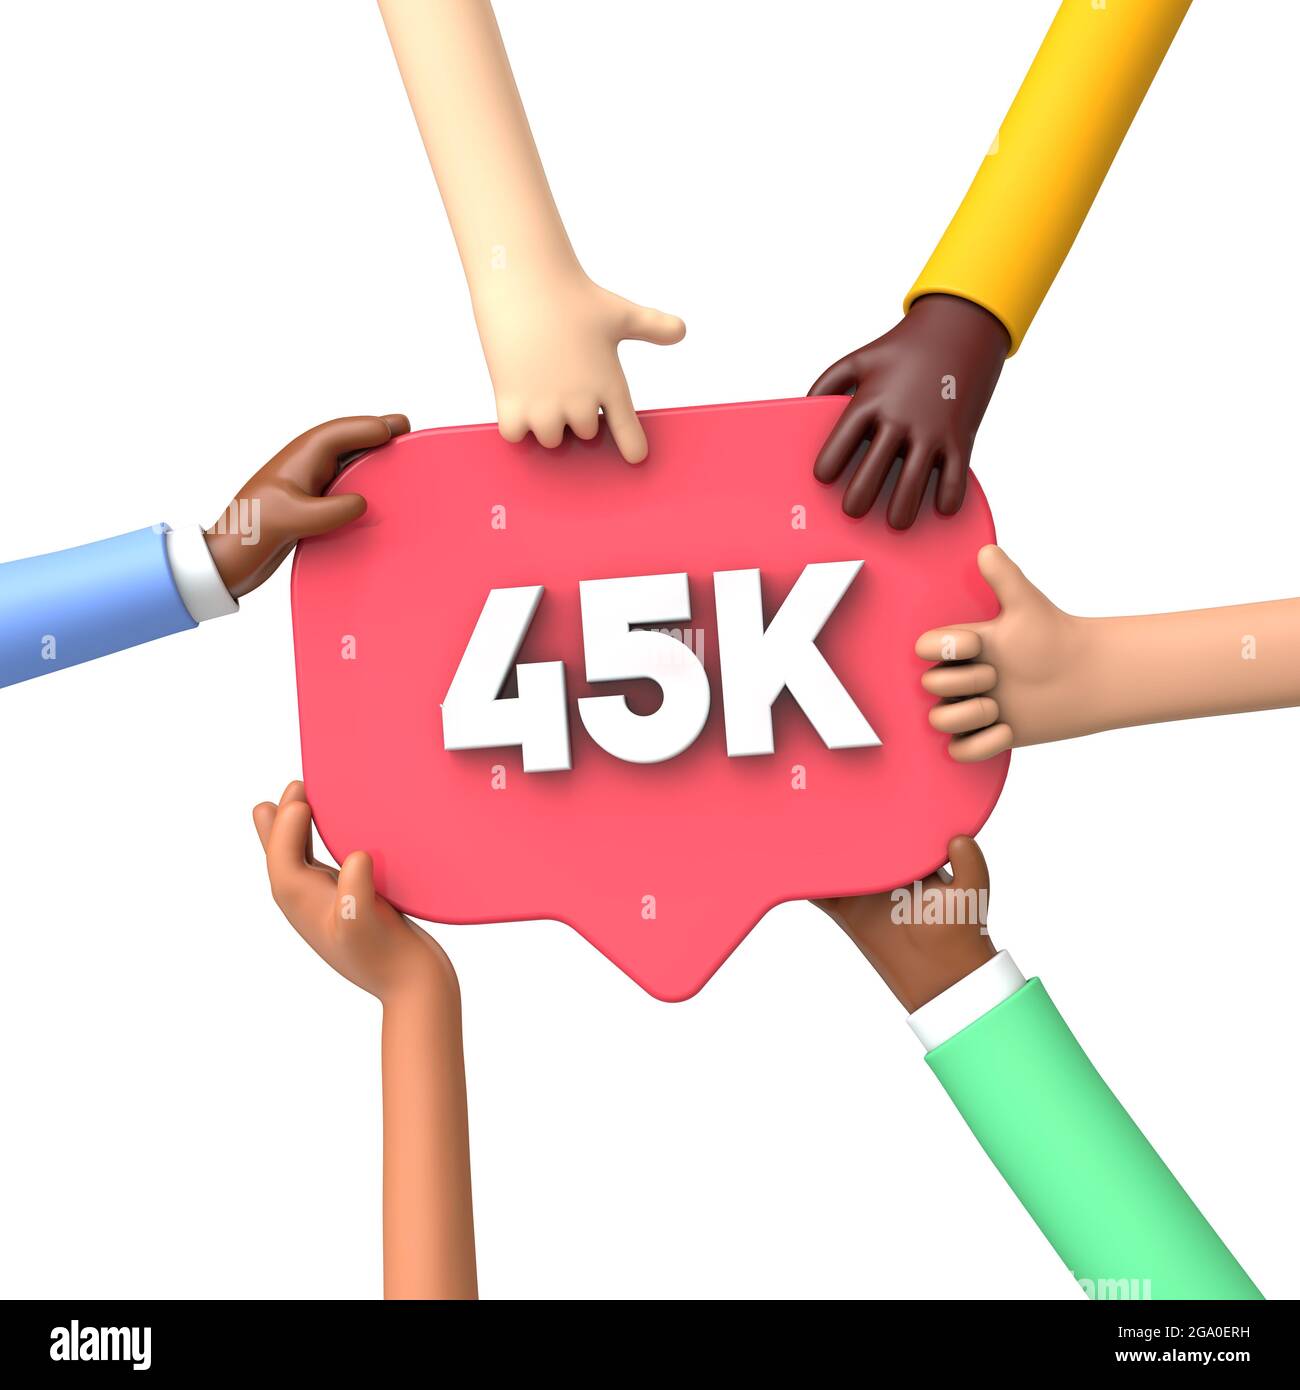 Mani che tengono un'etichetta di banner dei social media 45k. Rendering 3D Foto Stock